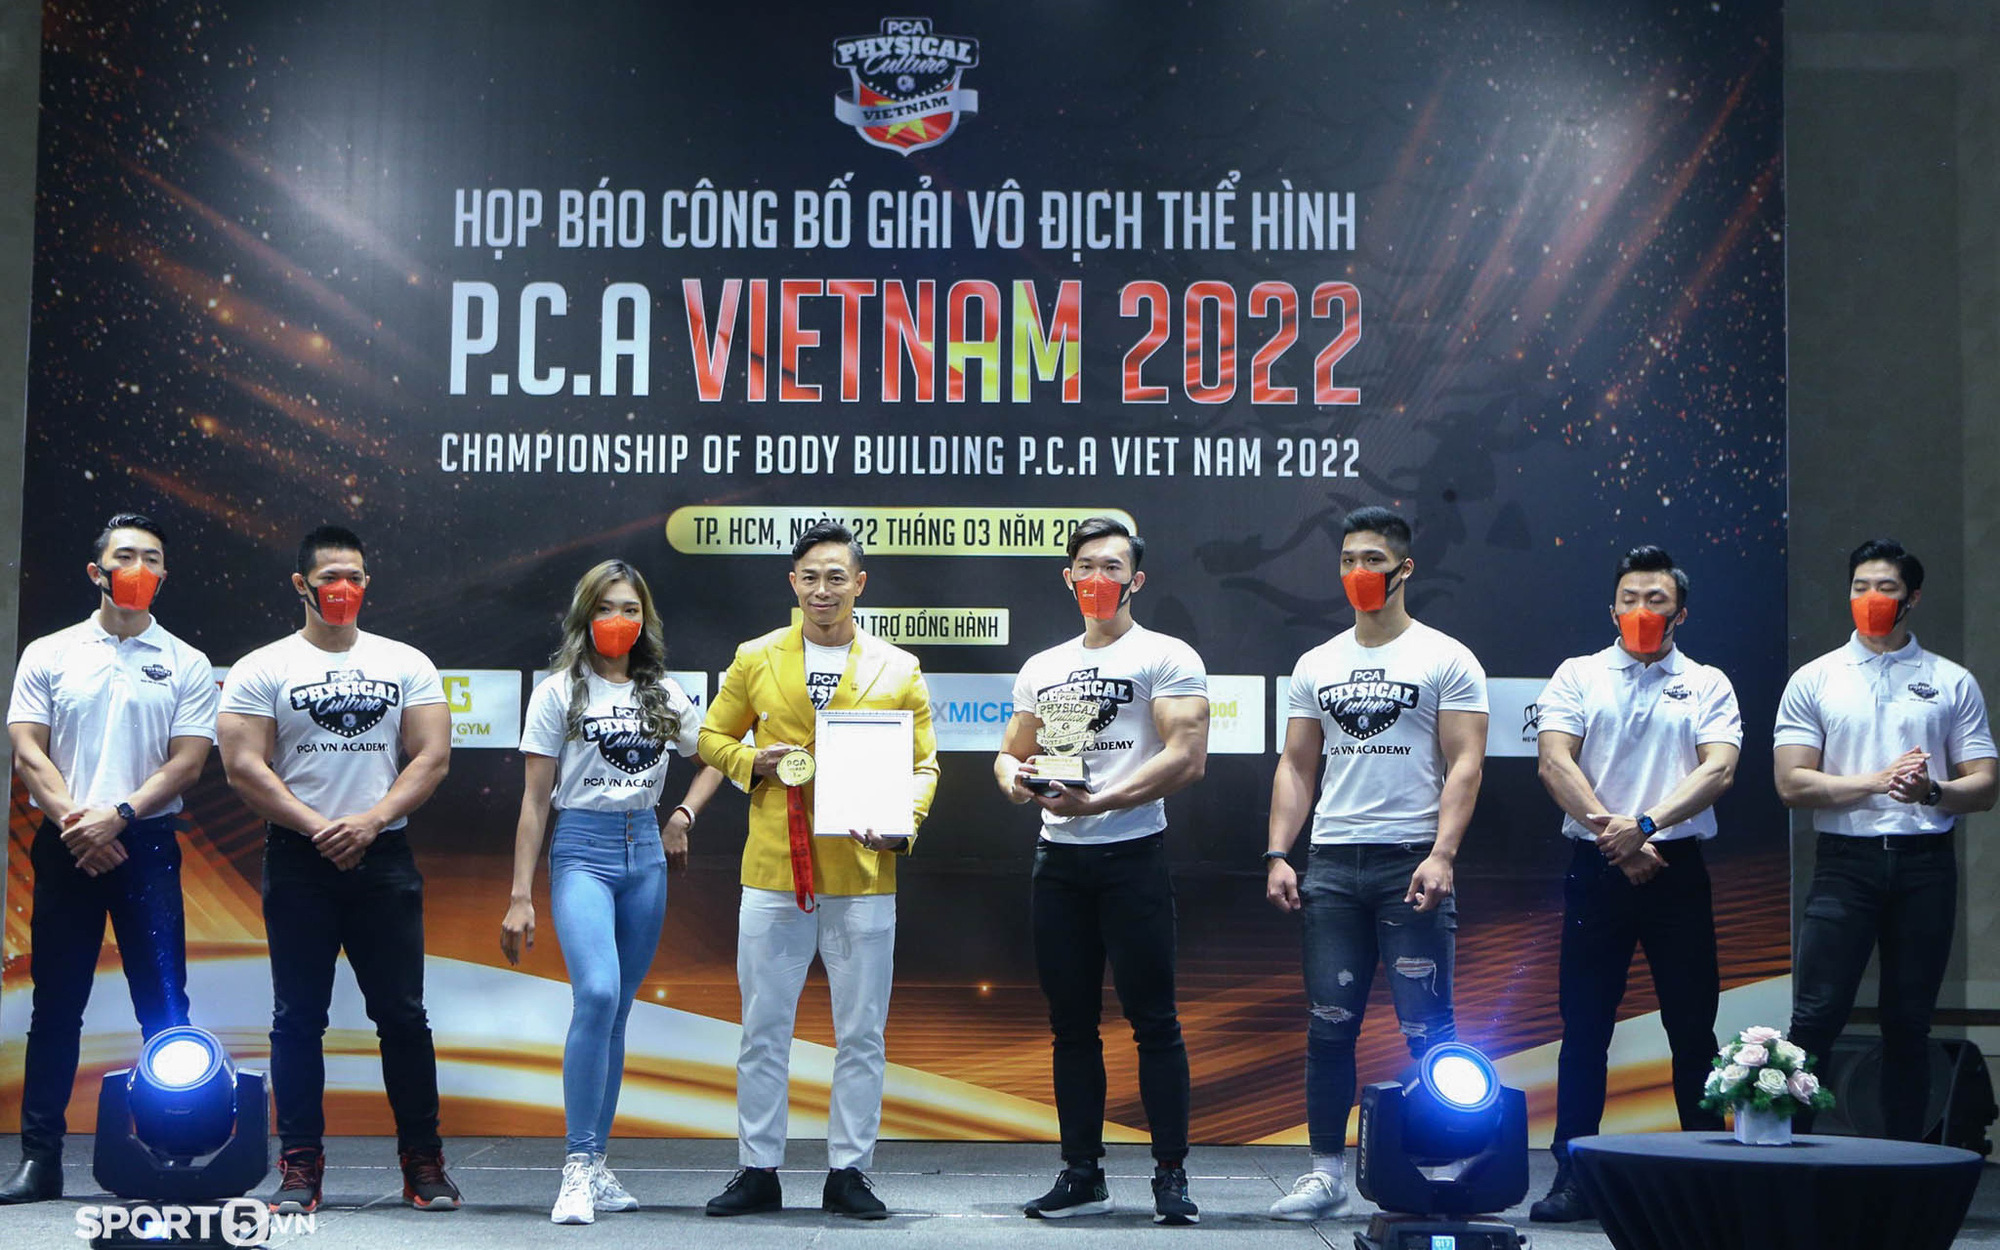 Giải vô địch thể hình quốc tế P.C.A Việt Nam 2022 chính thức khởi động